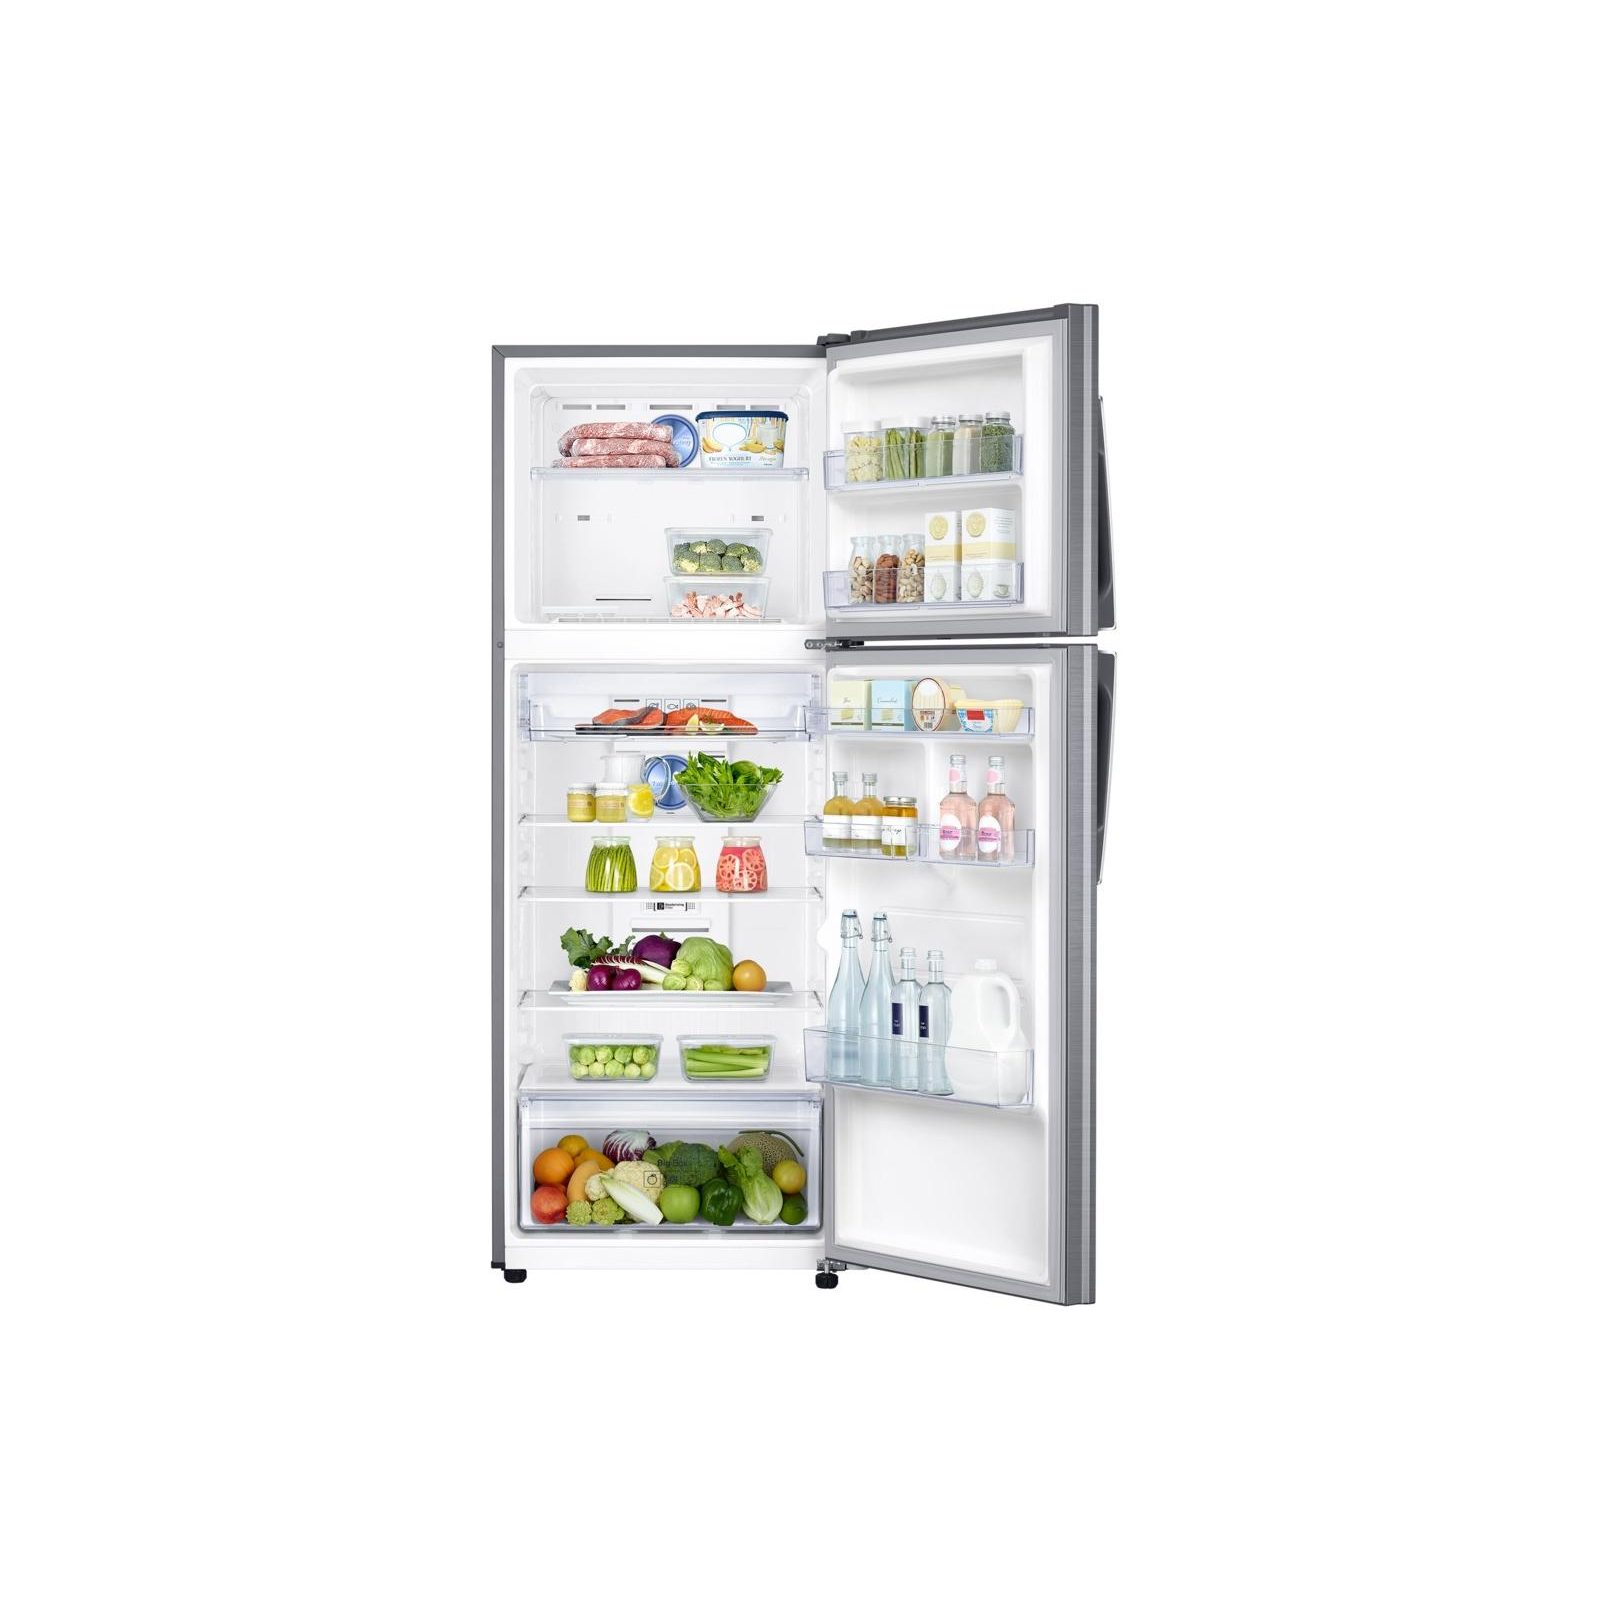 Холодильник Samsung RT38K5400S9/UA изображение 6